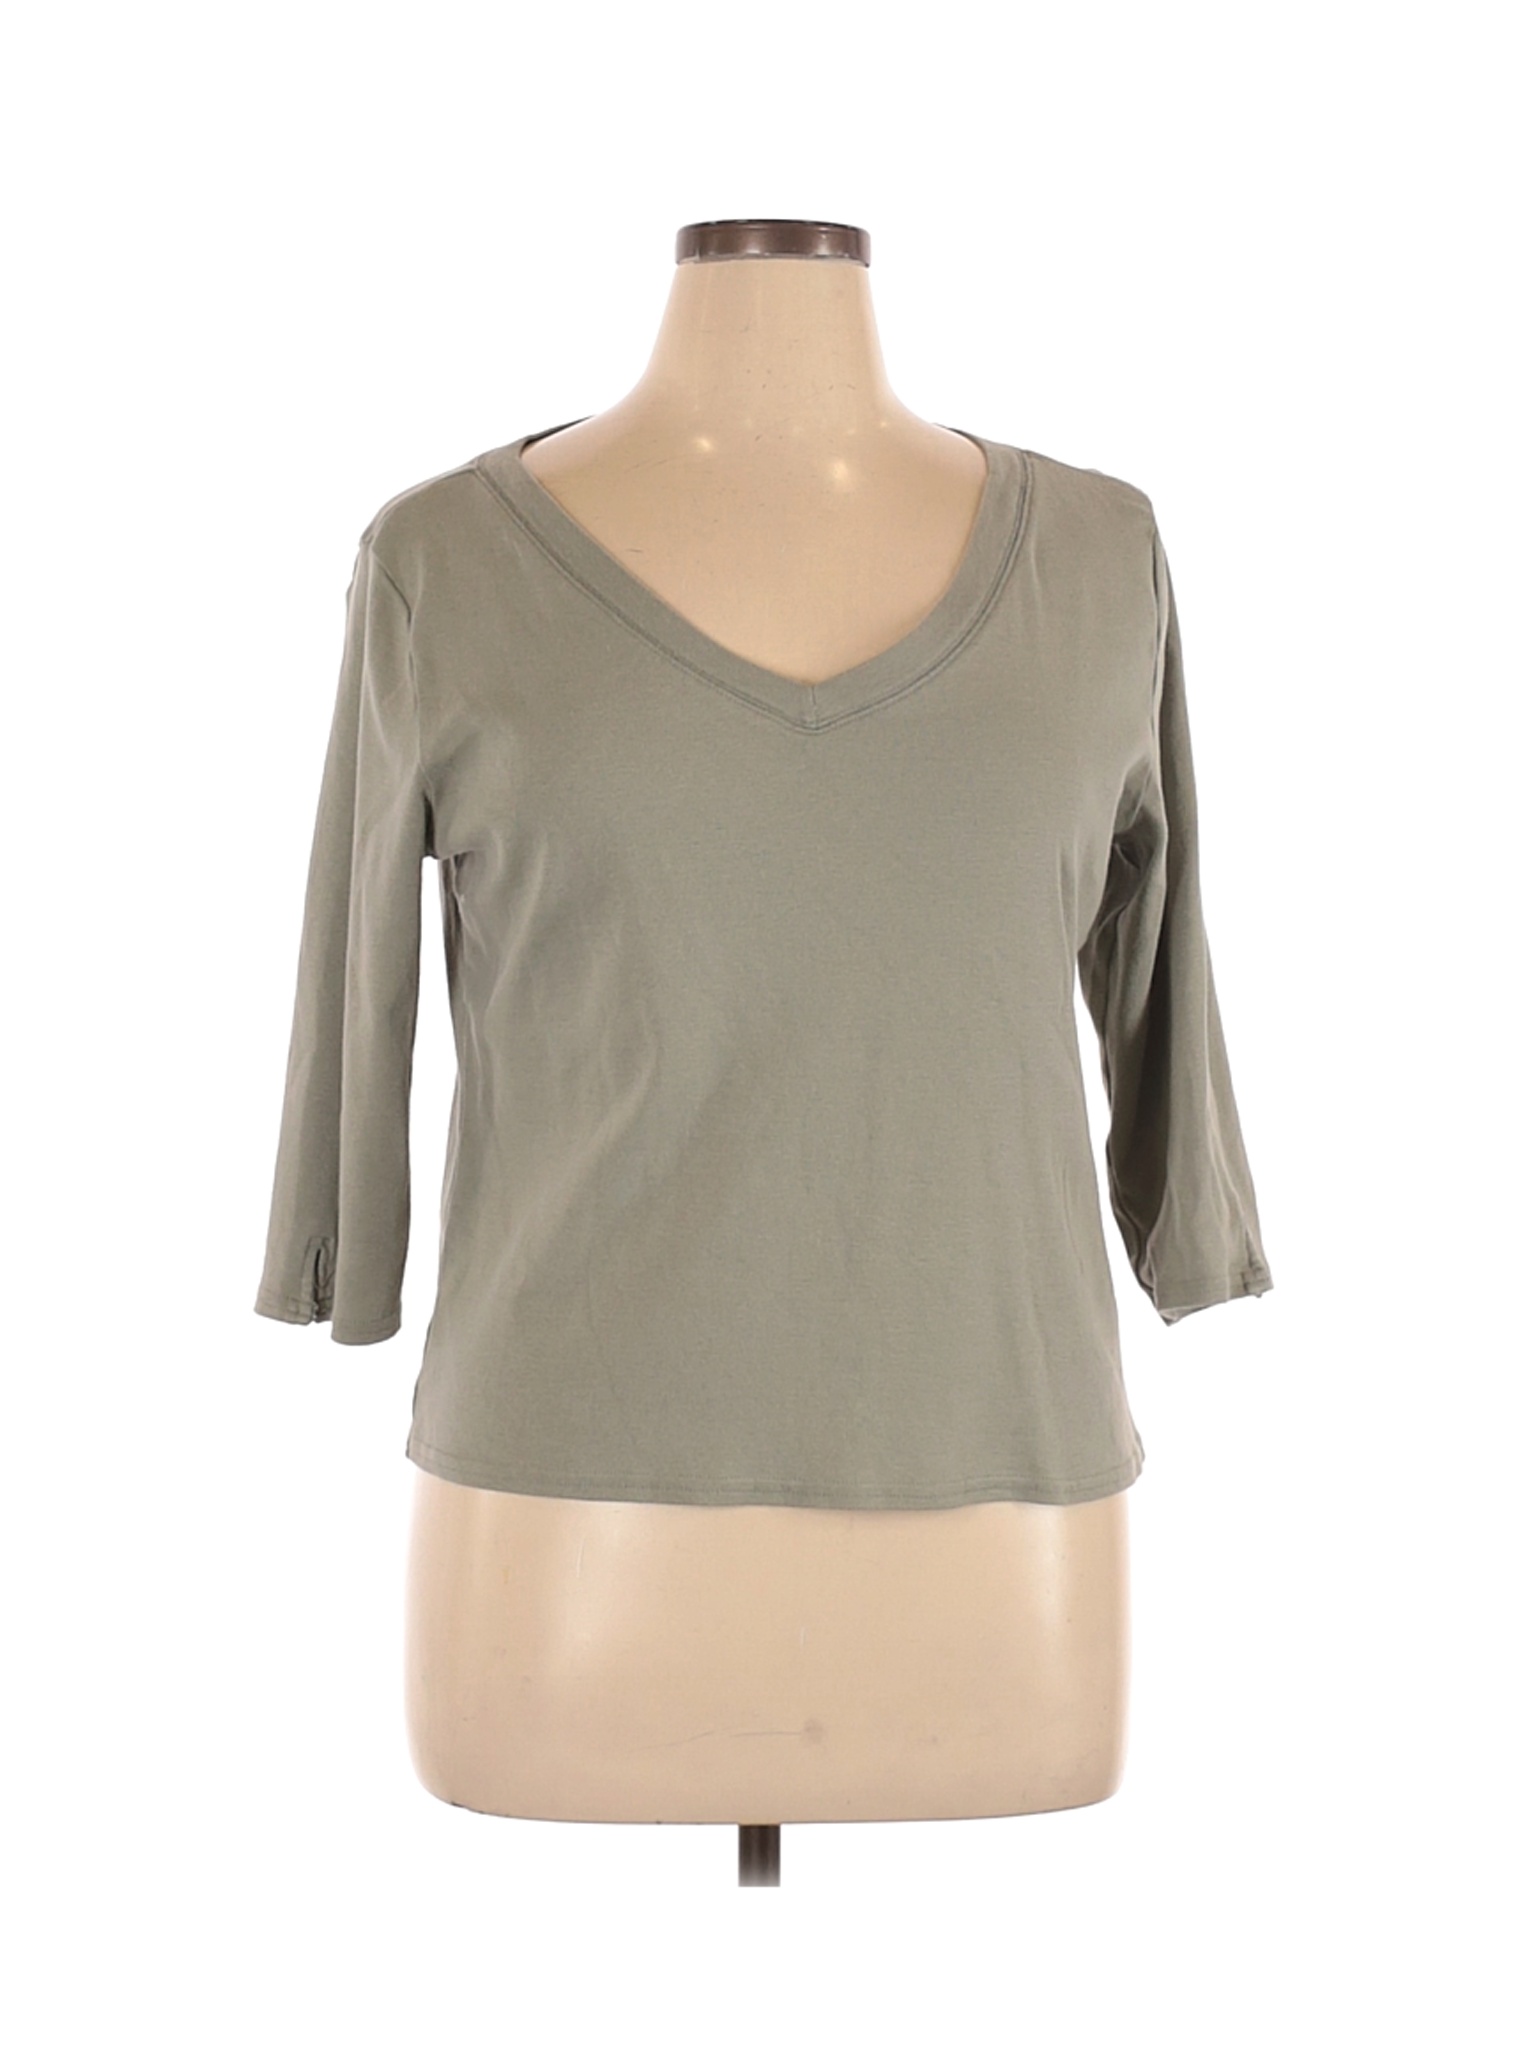 Isabella Bird Women Gray Long Sleeve T-Shirt XL | eBay